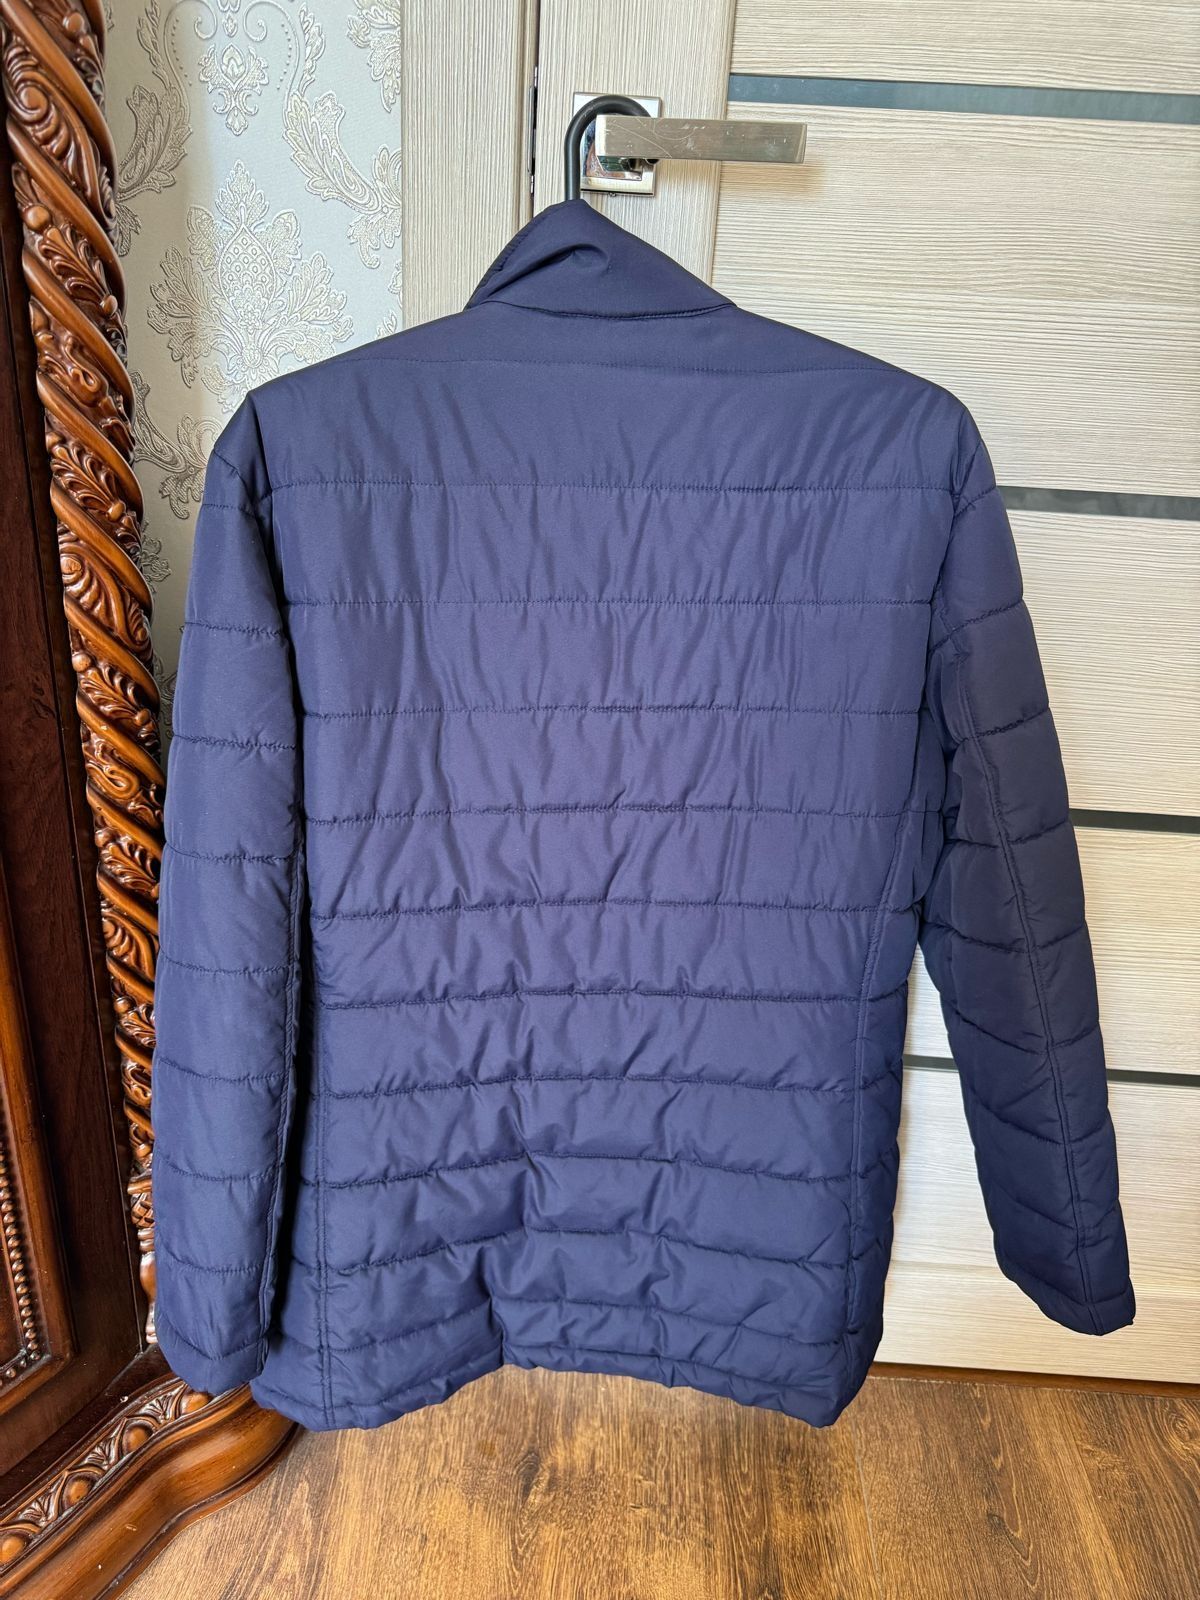 Куртка мужская на весну, размер L (48-52)